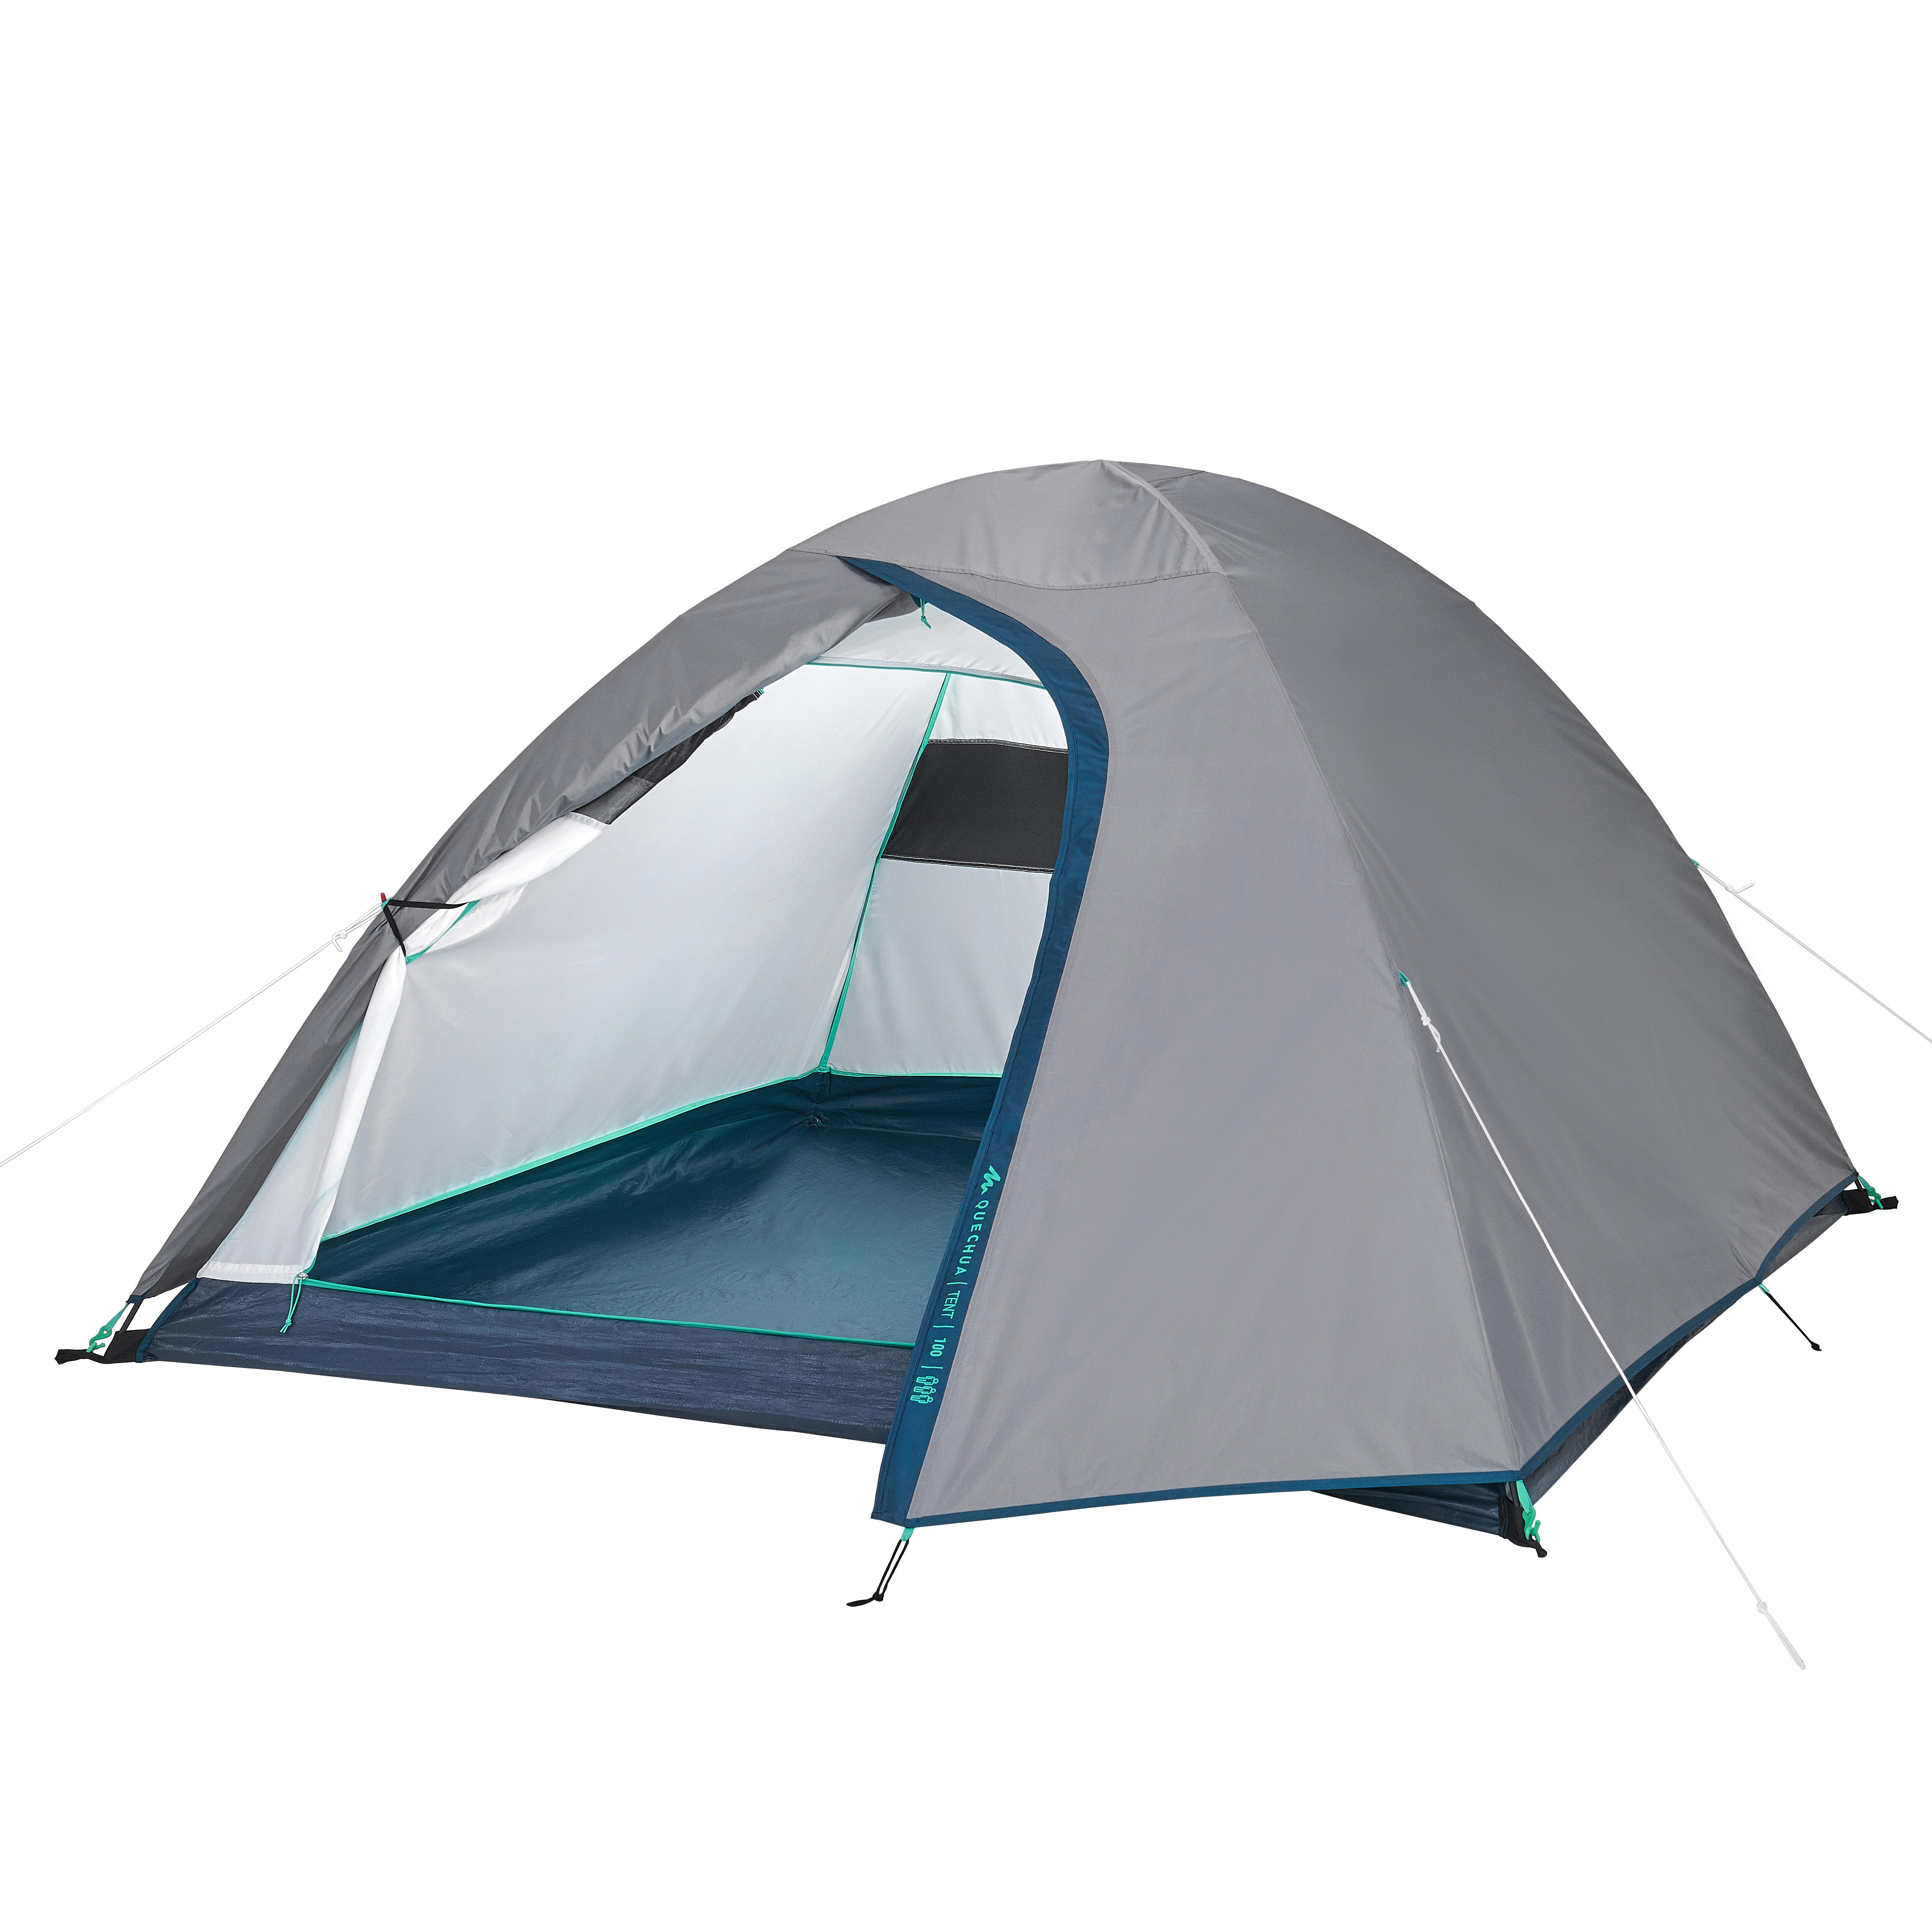 decathlon tent price